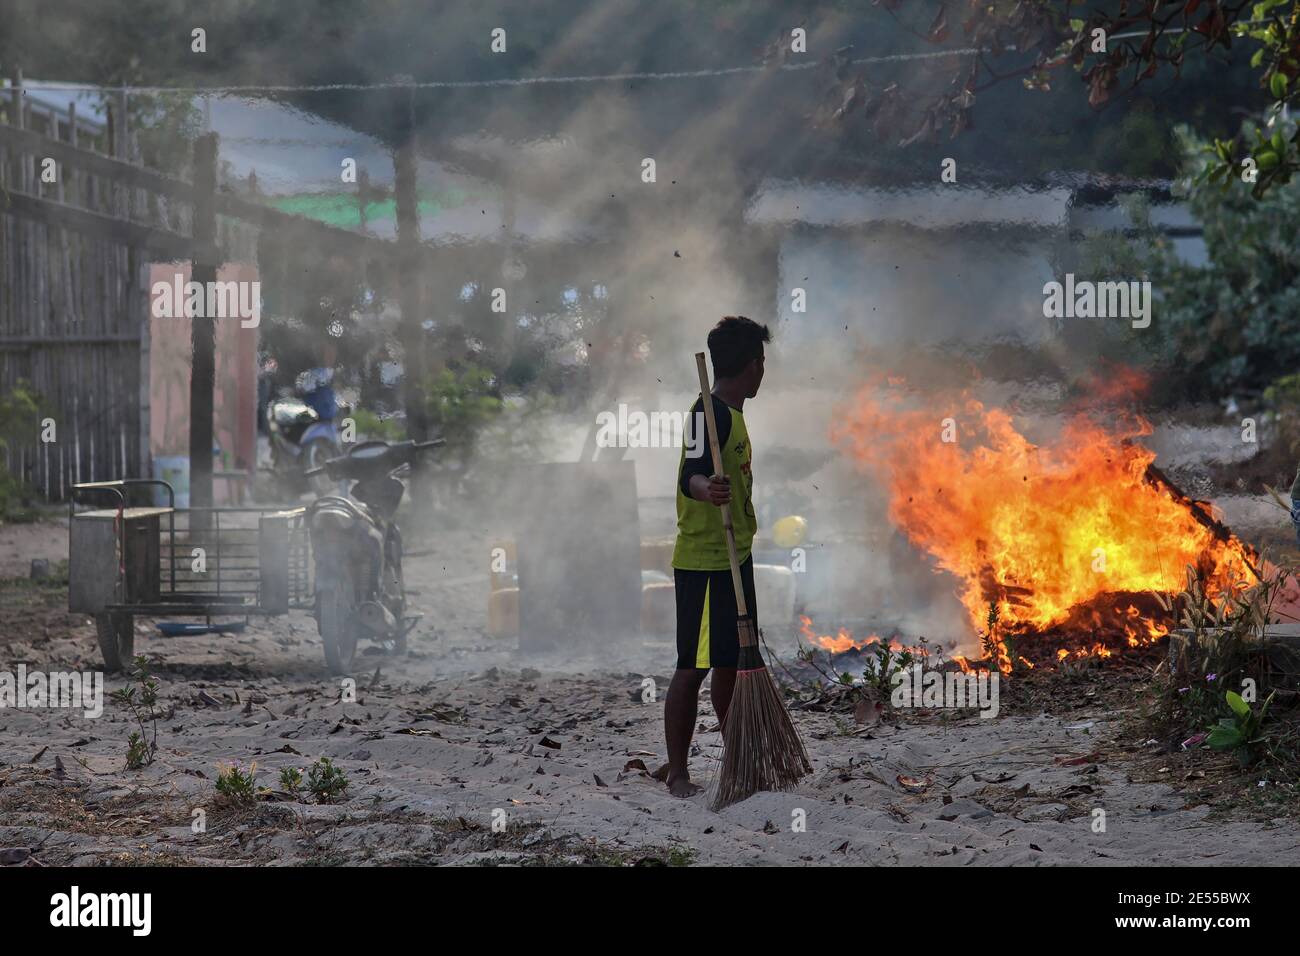 Chon Buri, Thailandia - 16 febbraio: I lavoratori cambogiani si levano in guardia contro gli incendi quando bruciano e distruggono i rifiuti nell'area di lavoro il 16 febbraio 2015. Foto Stock